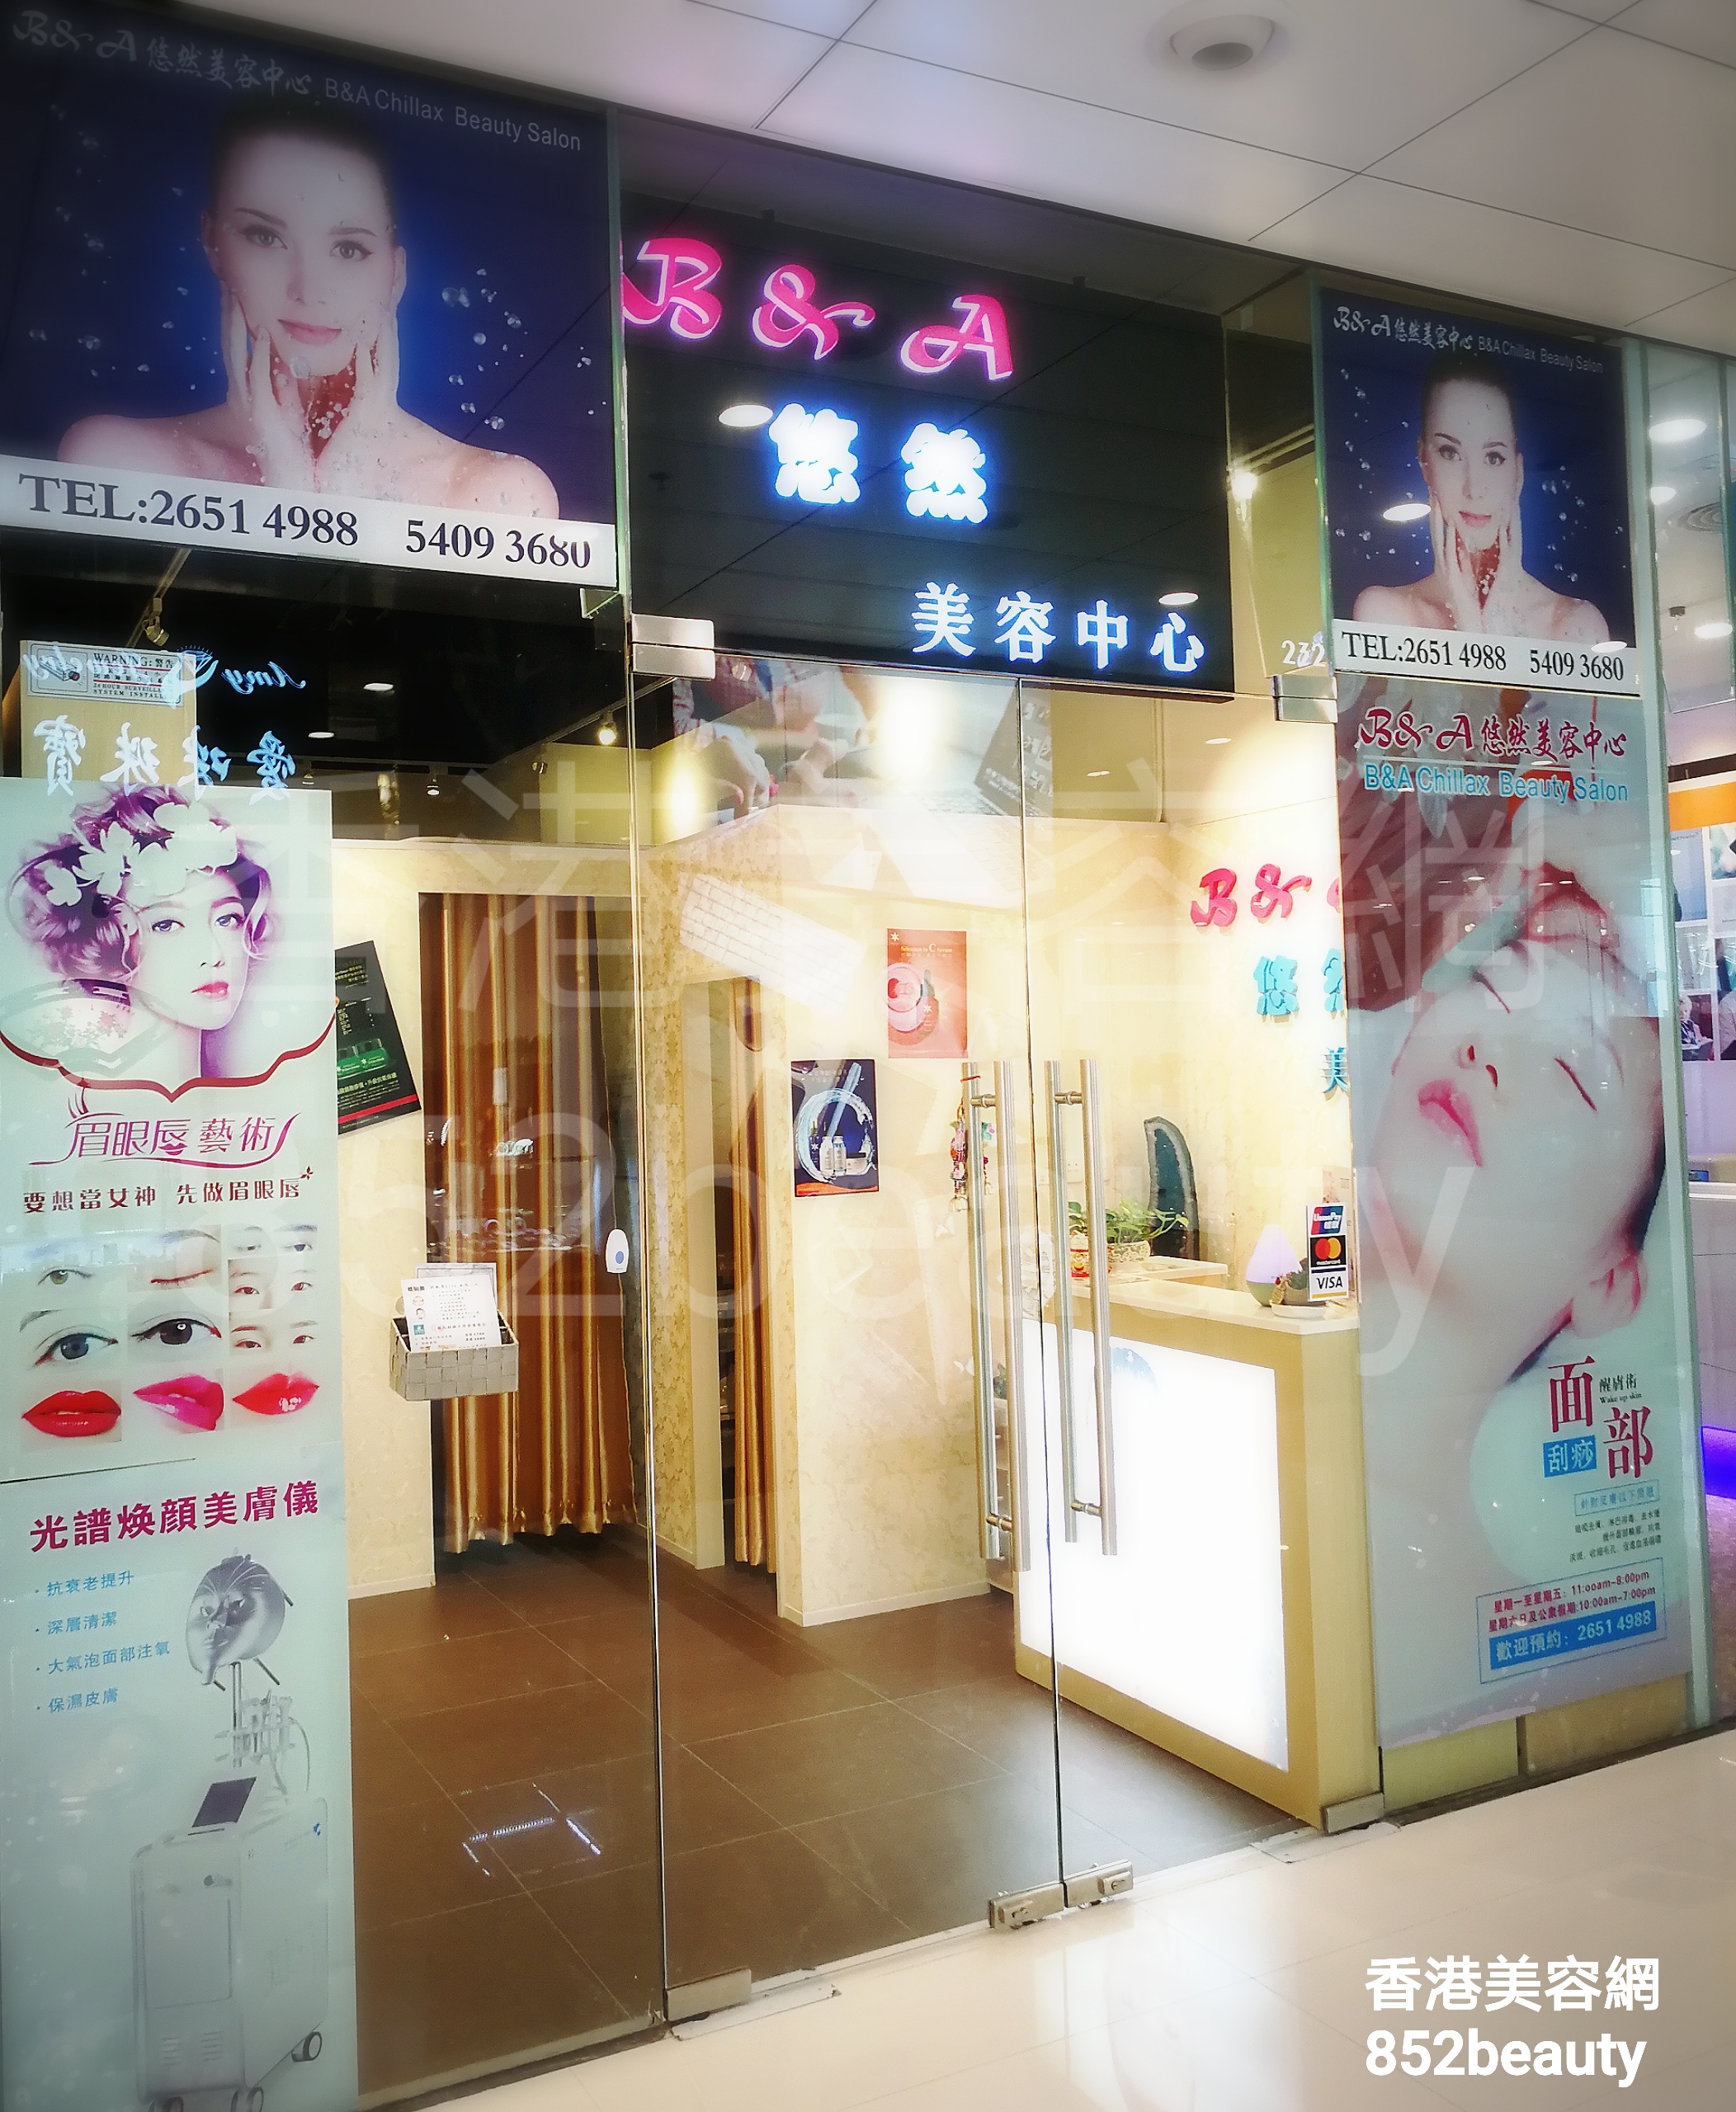 美容院 Beauty Salon: B&A 悠然美容中心